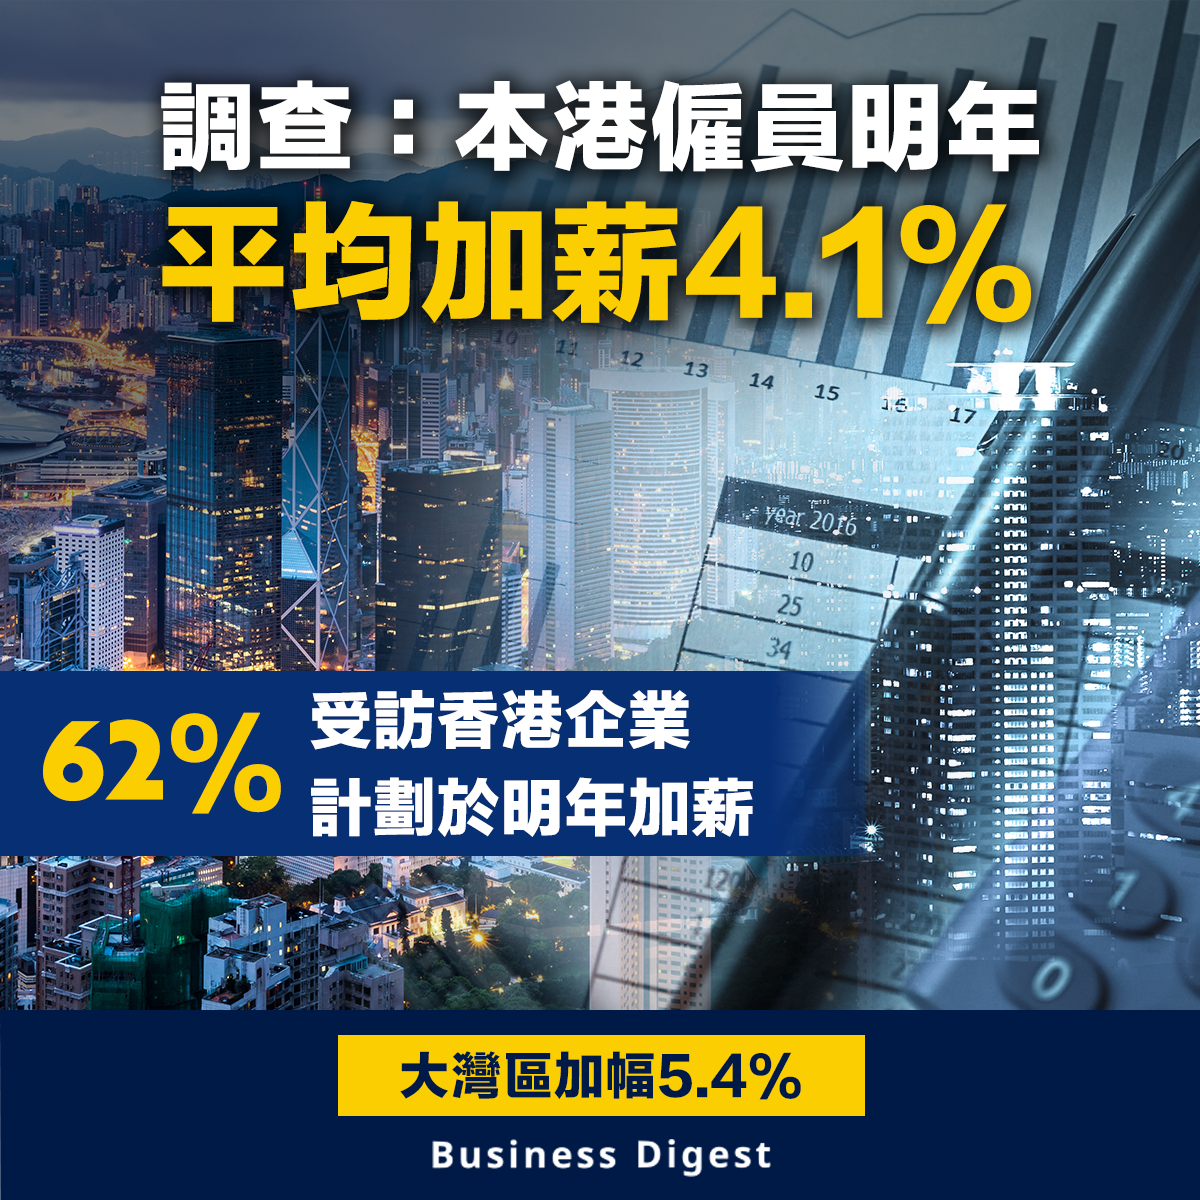 【本港加薪】調查：本港僱員明年平均加薪4.1%